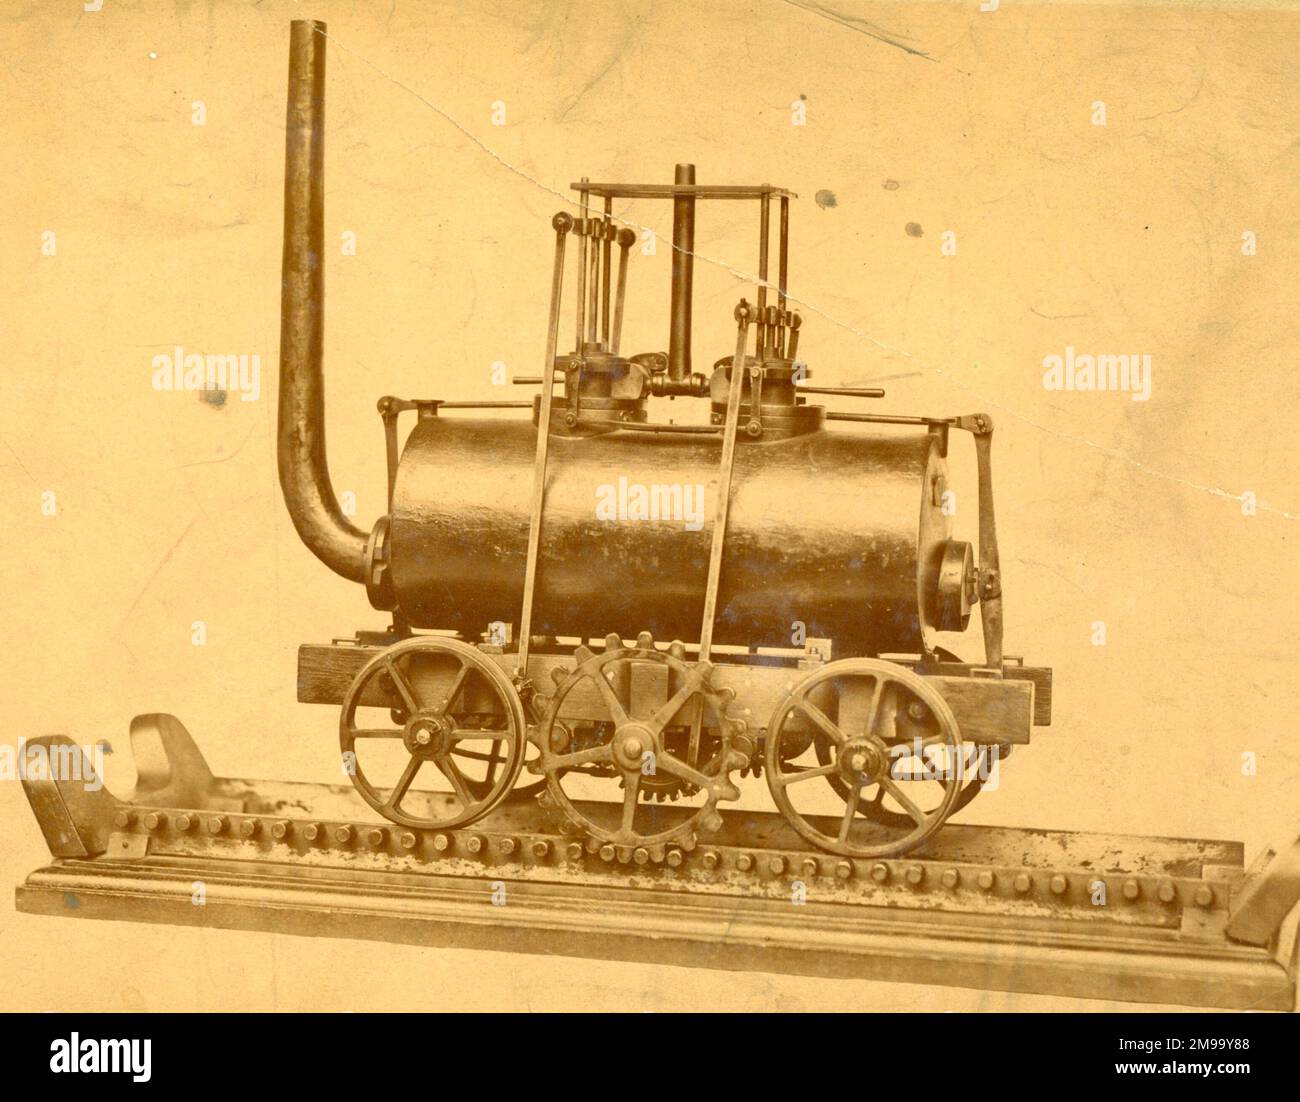 Modello della locomotiva a vapore di Matthew Murray, spinta da una ruota dentata che si impegna in una cremagliera su una delle rotaie, usata 1812-1835. Foto Stock